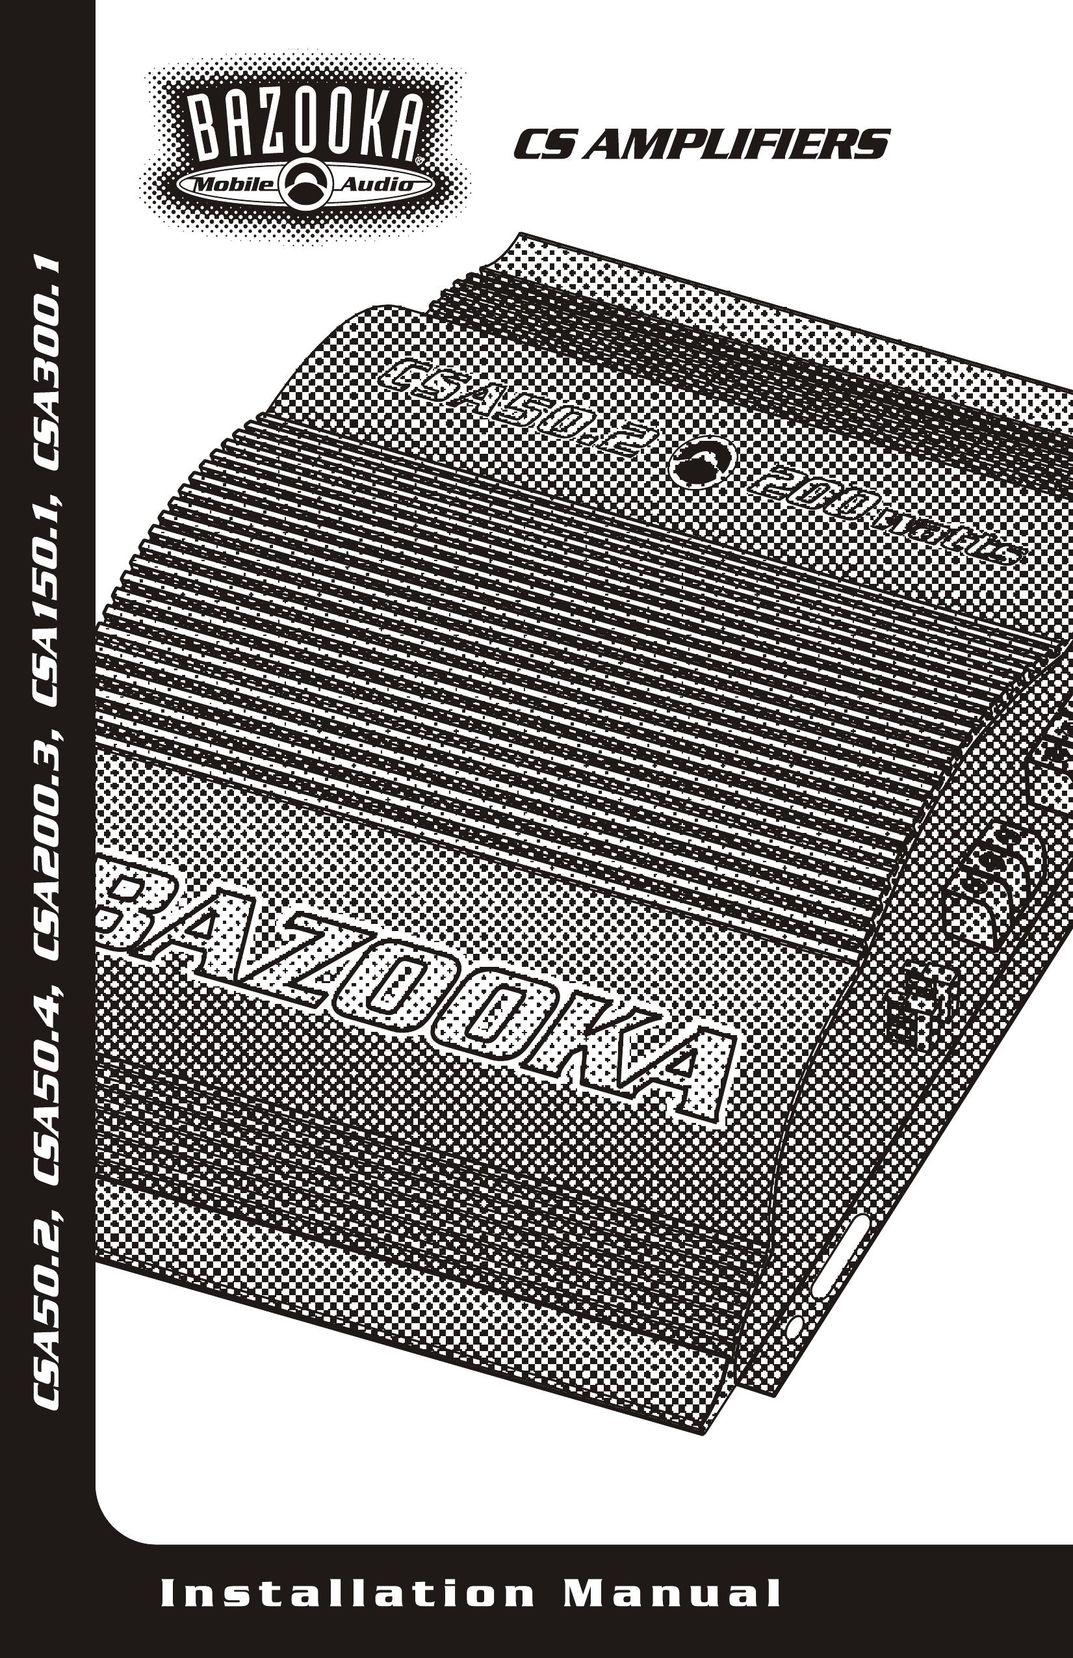 Bazooka CSA50.4 Car Amplifier User Manual